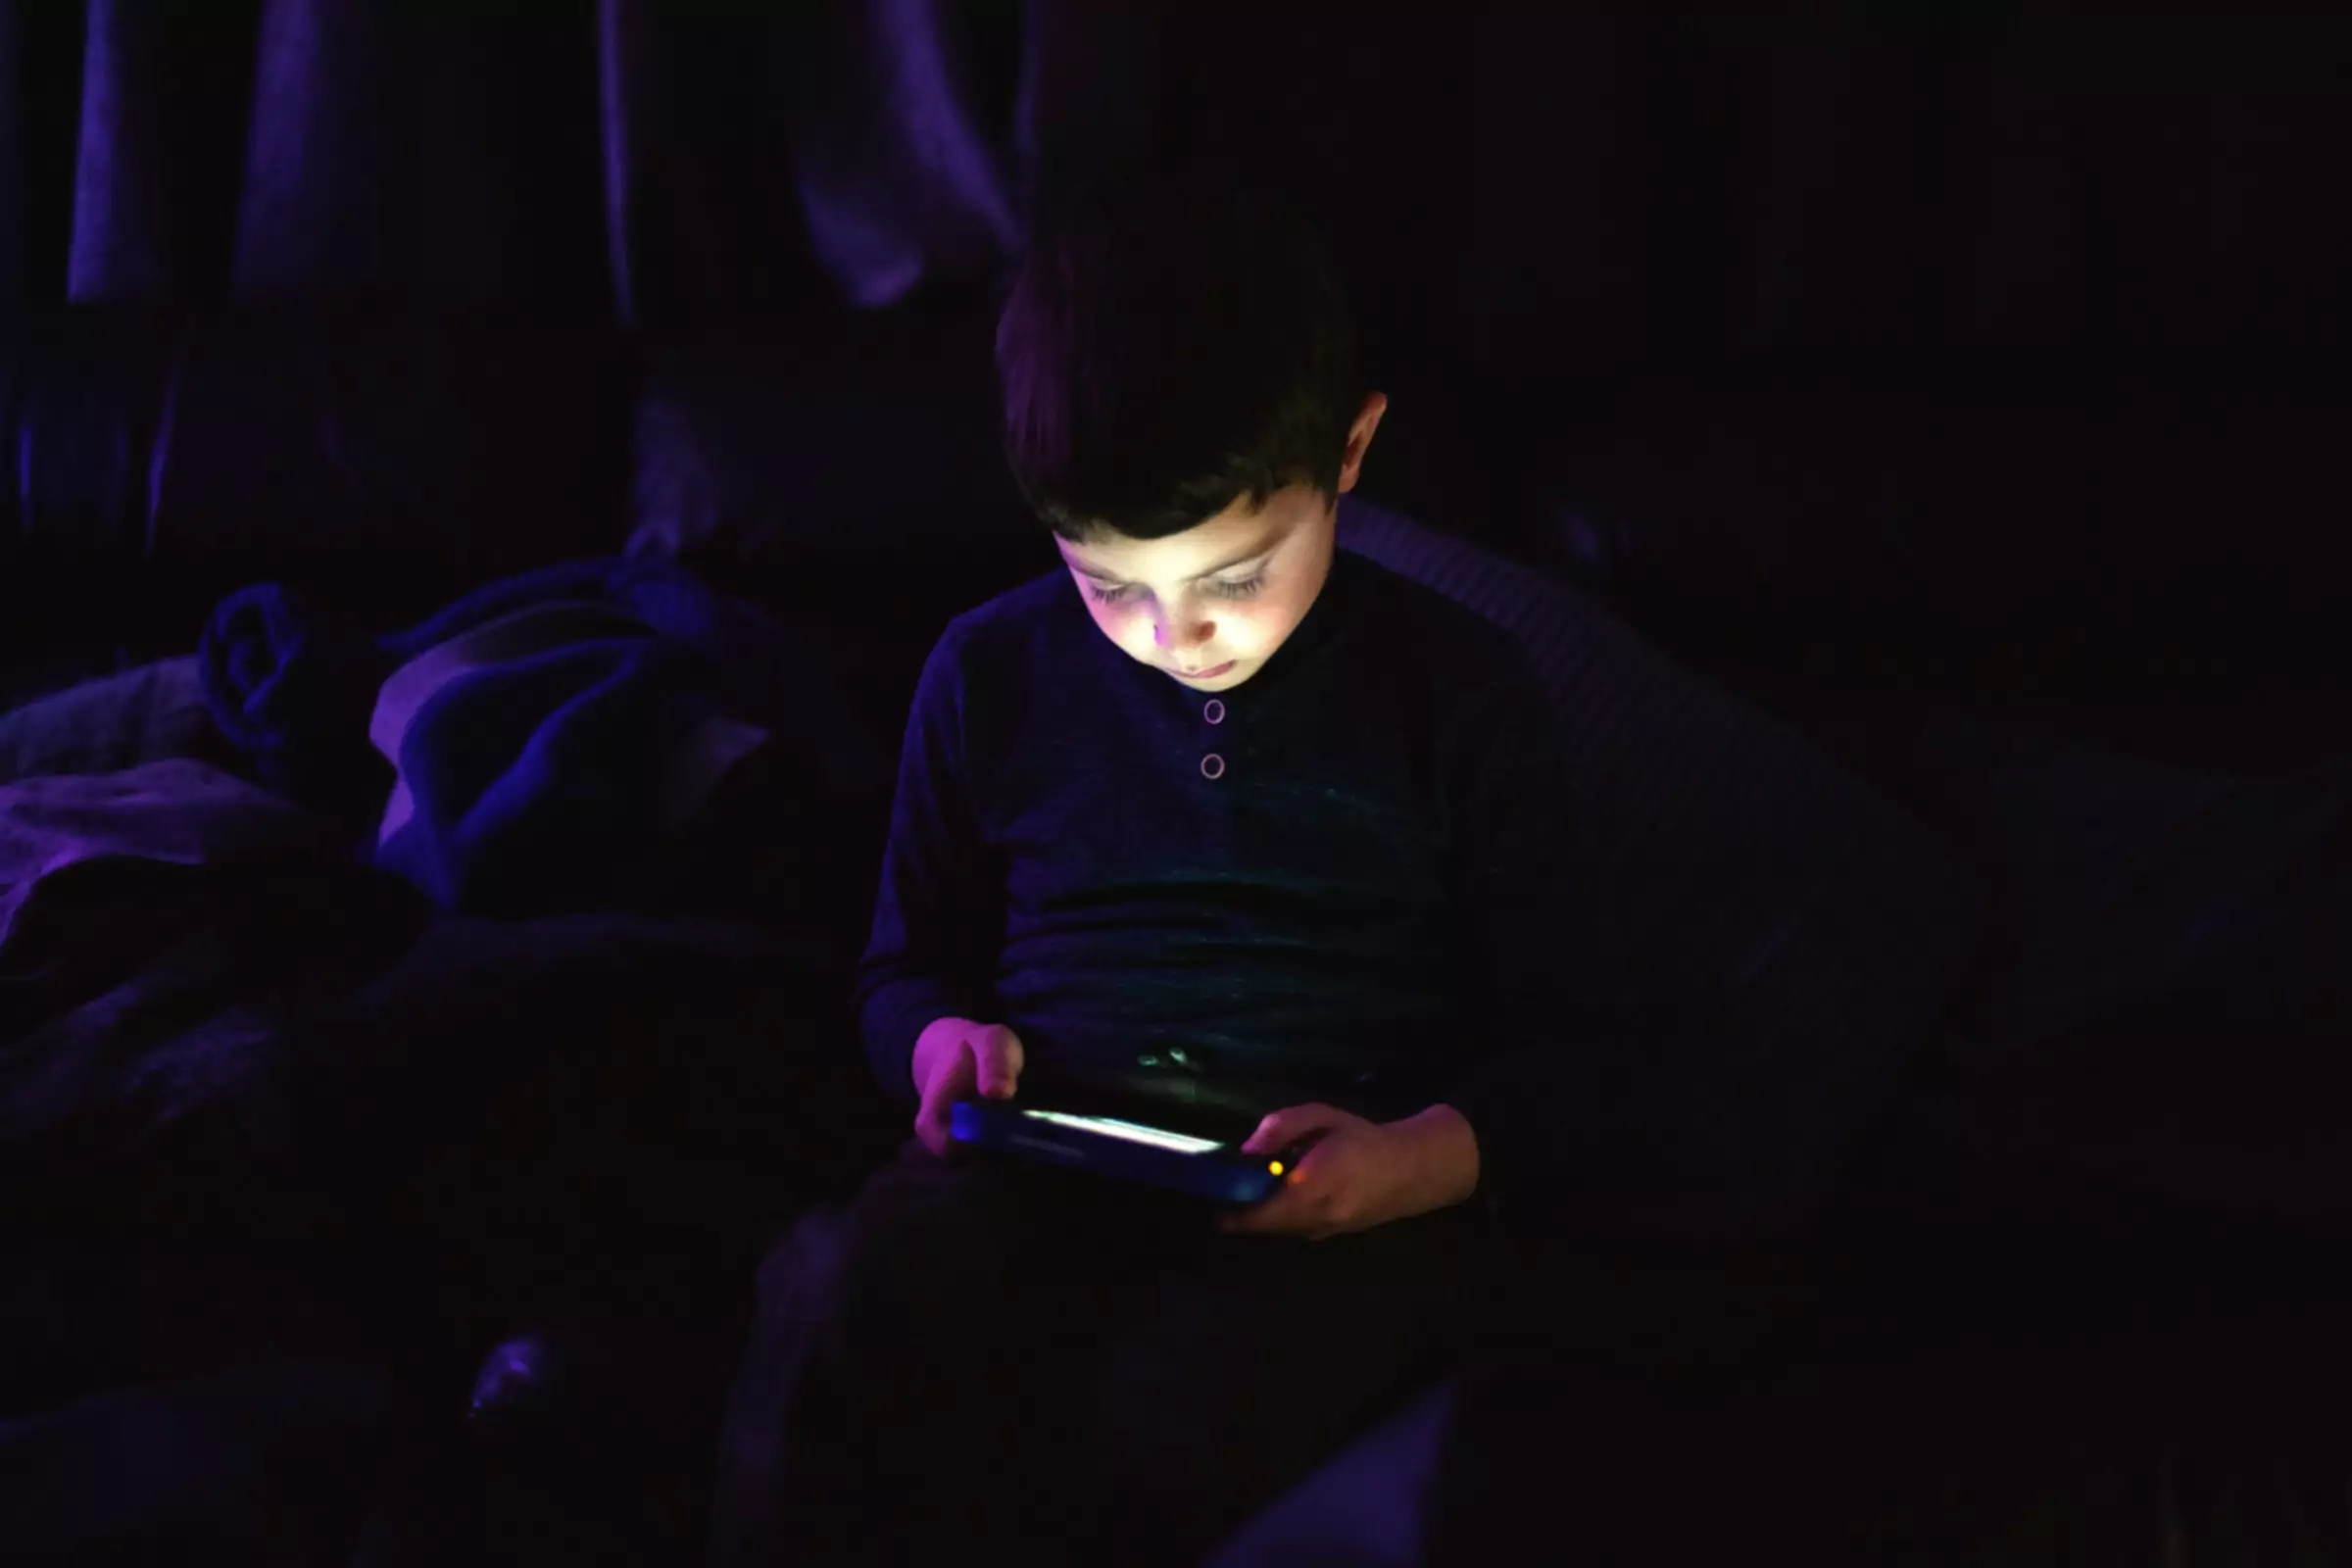 lille barn, der spiller på tablet i mørkt rum